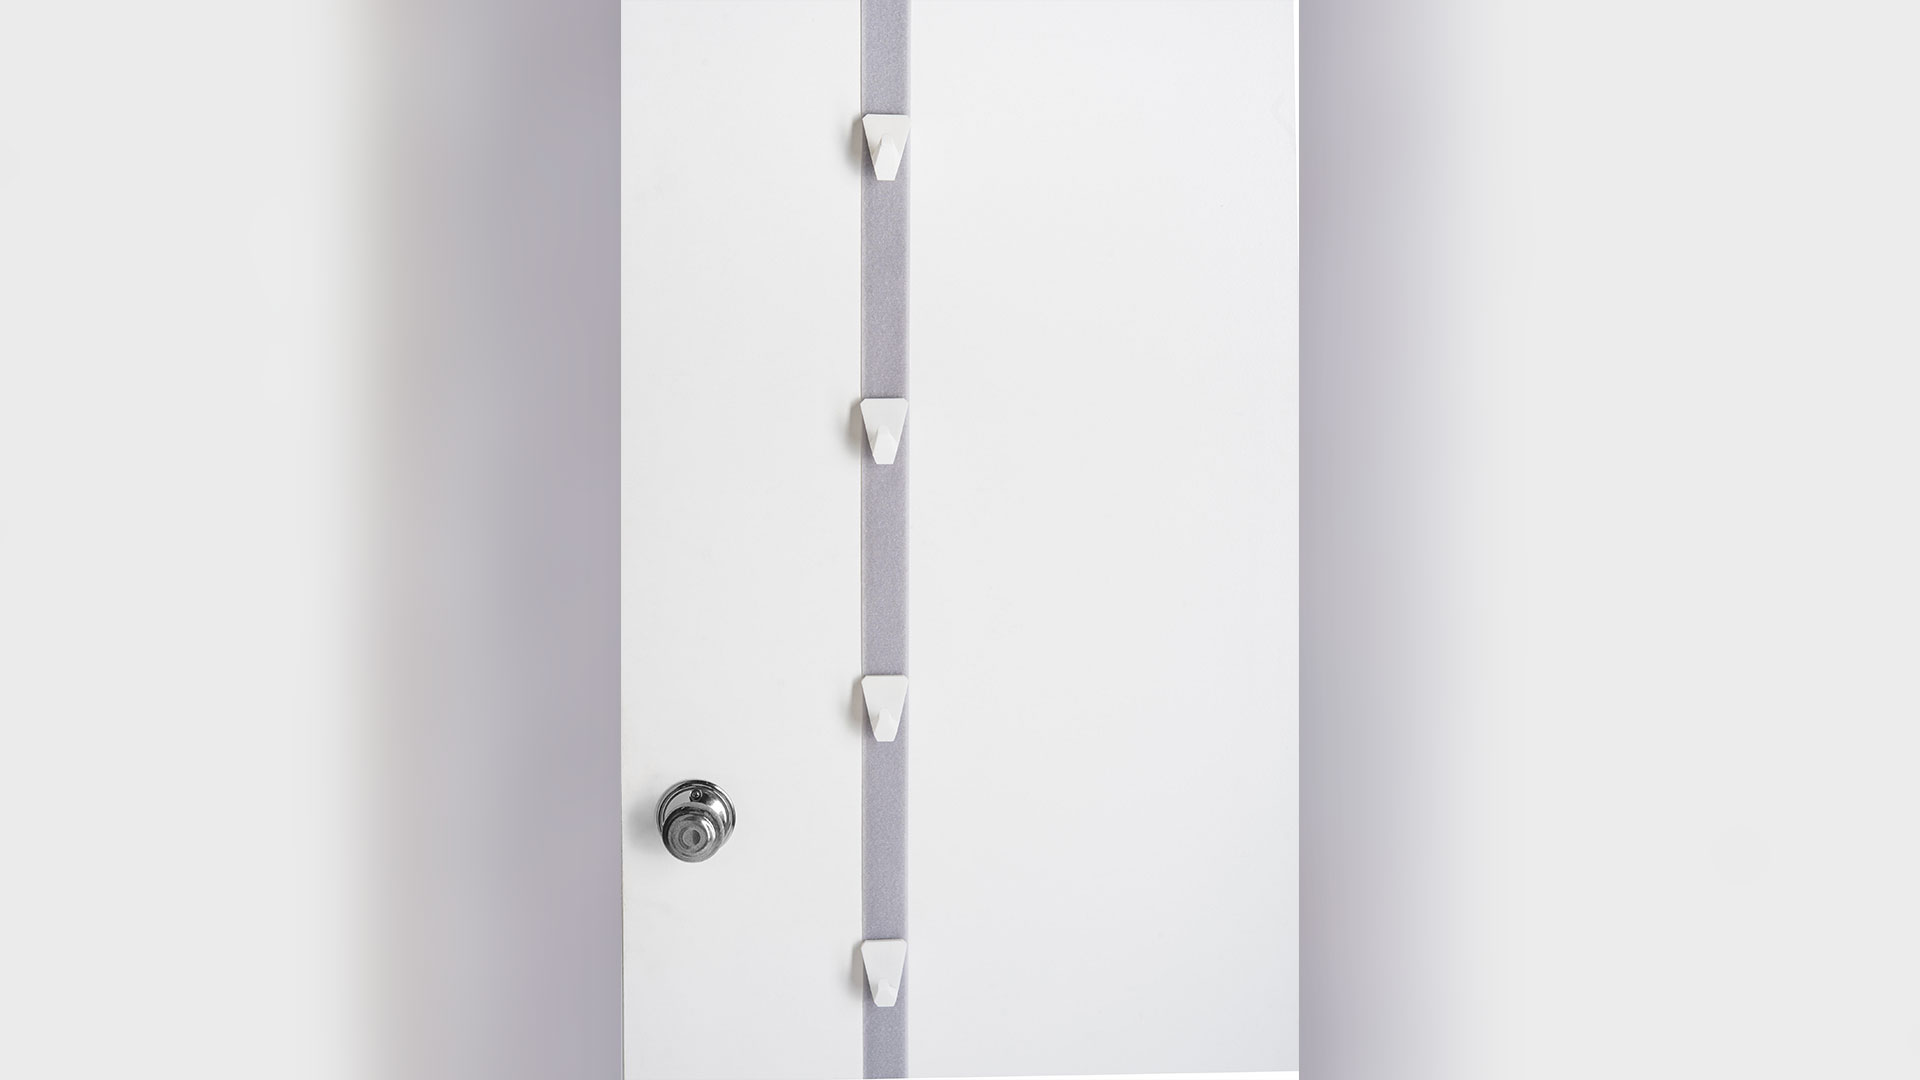 light grey/purple door belt hanging vertically down door, 4 small white hooks on belt, door know at bottom left of image 